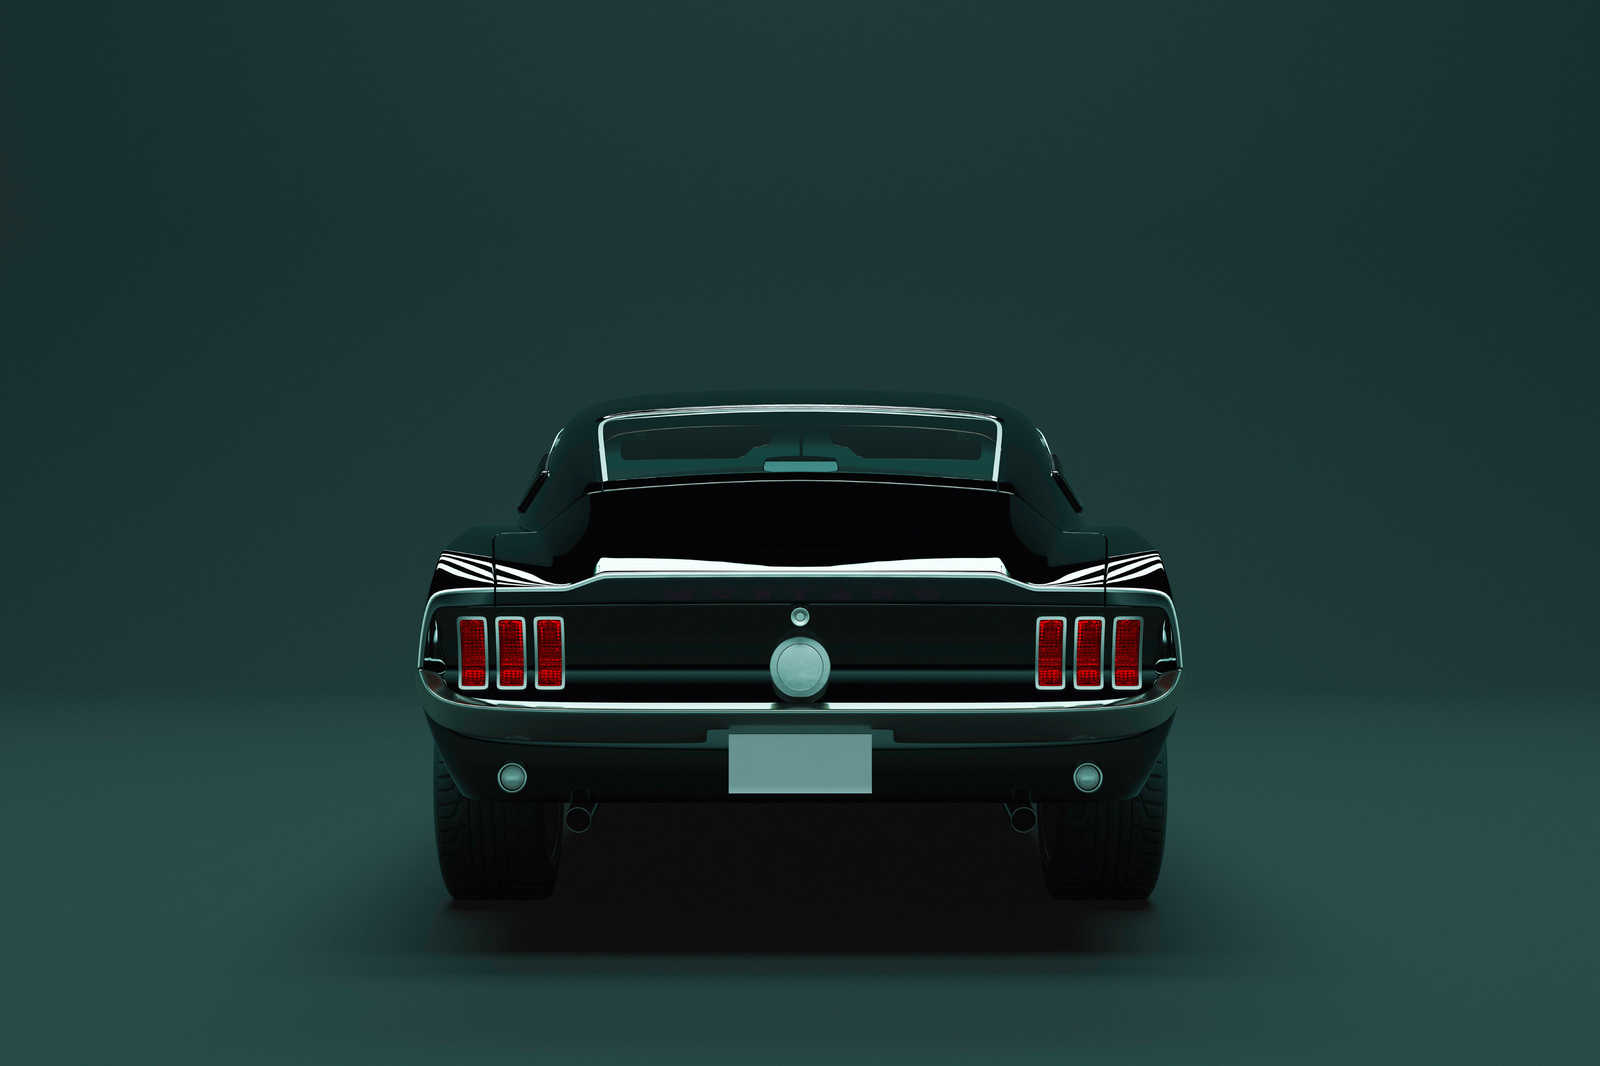             Mustang 3 - Quadro su tela con auto muscolari americane - 0,90 m x 0,60 m
        